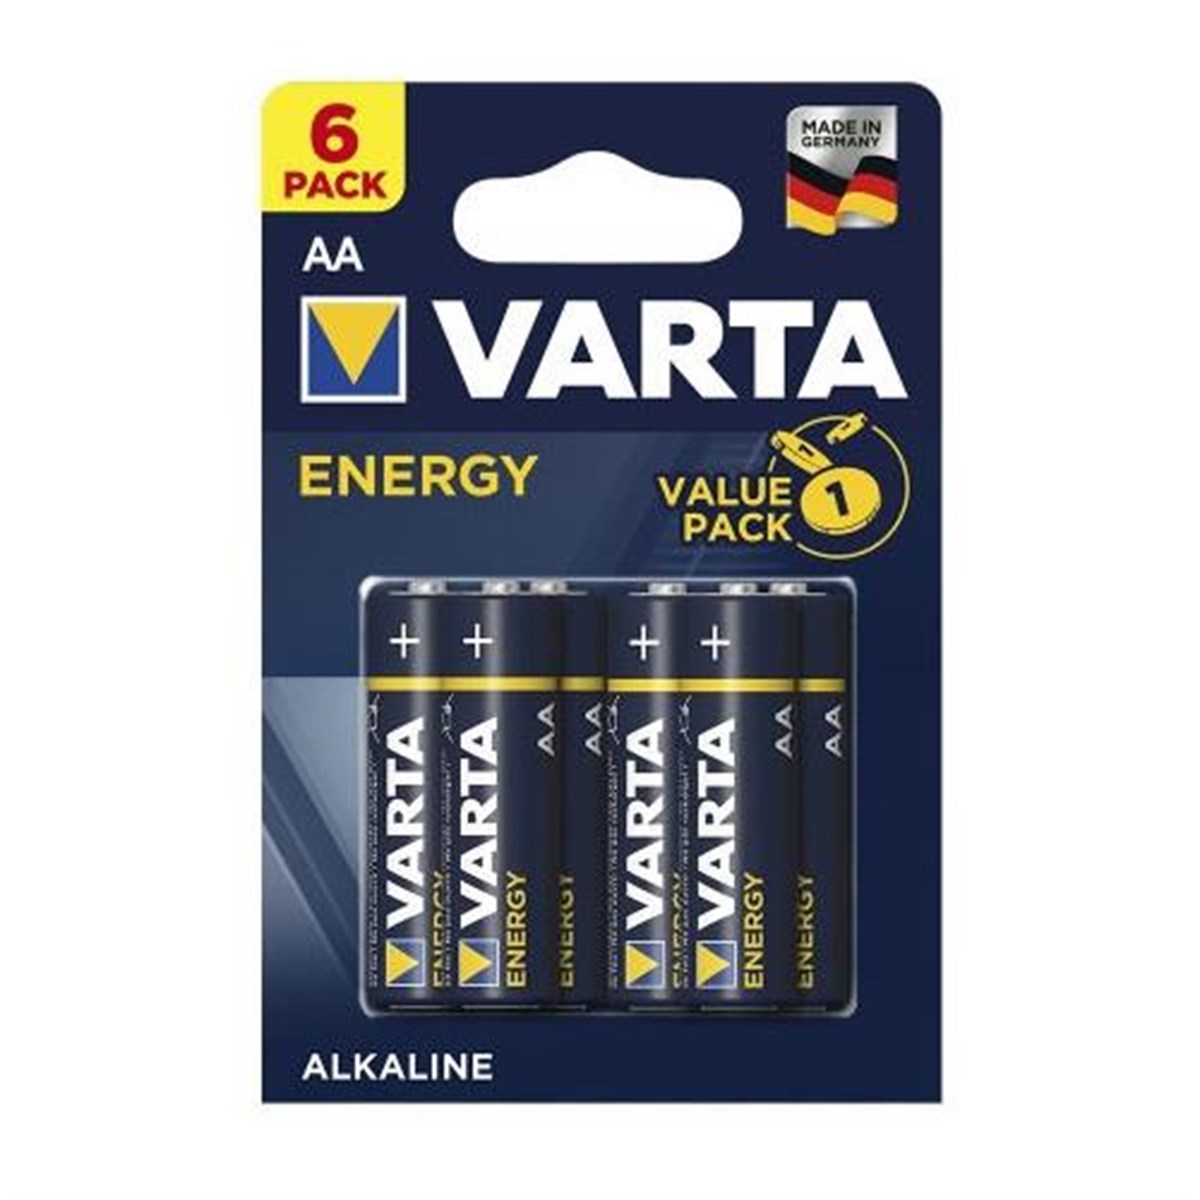 Varta Energy 4106 Alkalin AA Kalem Pil 6'lı Paket